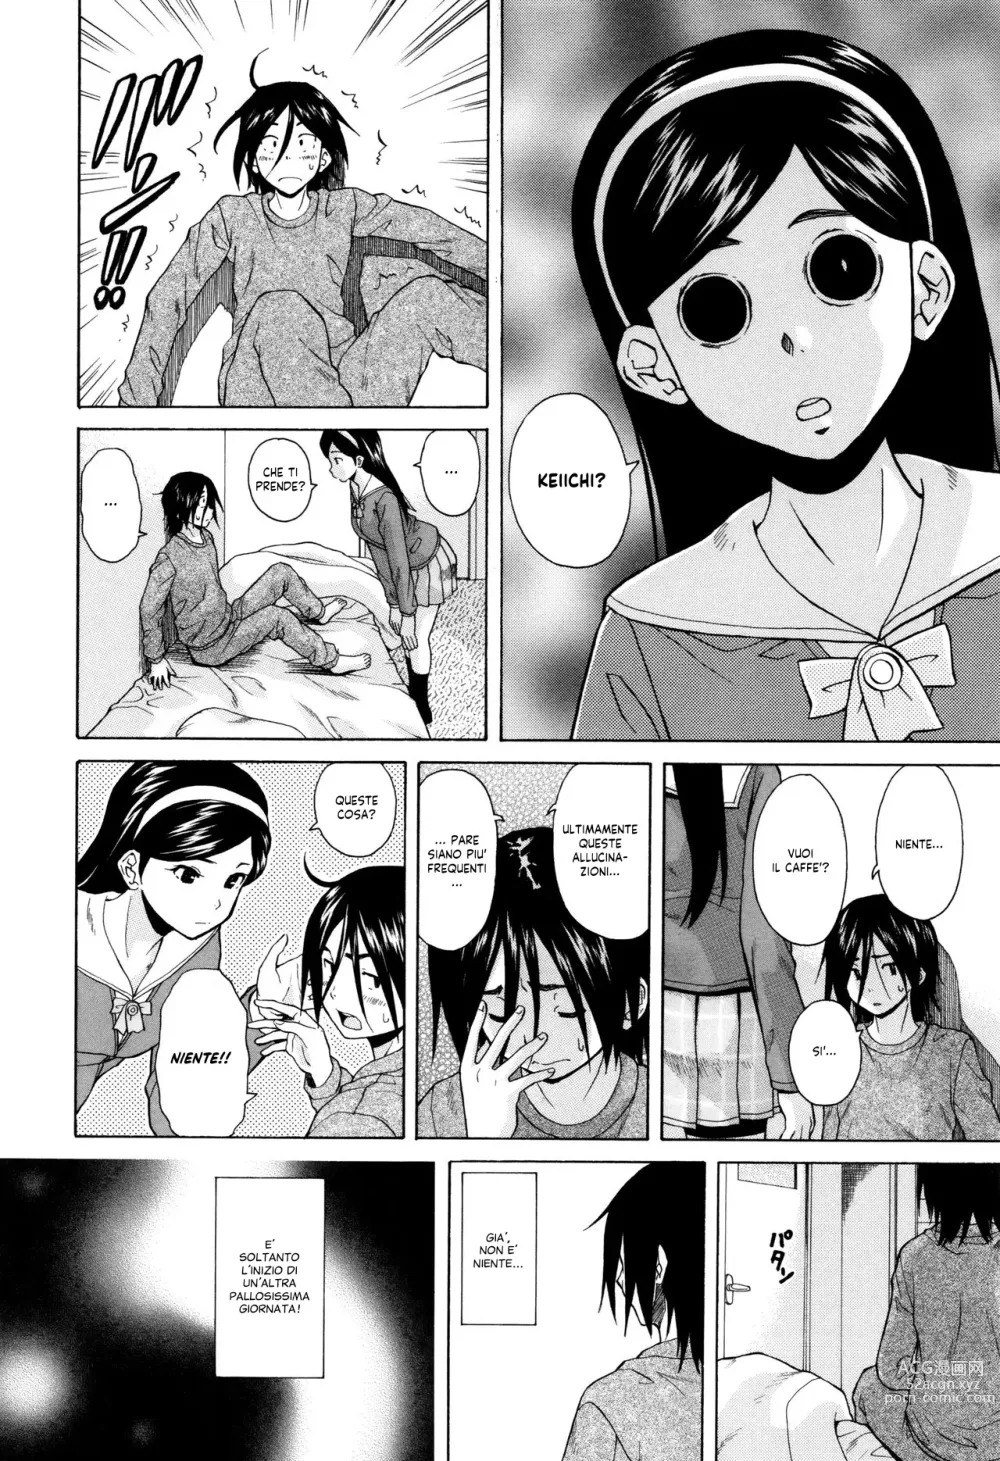 Page 7 of manga Segreti, Suicidi e Sorelle (decensored)